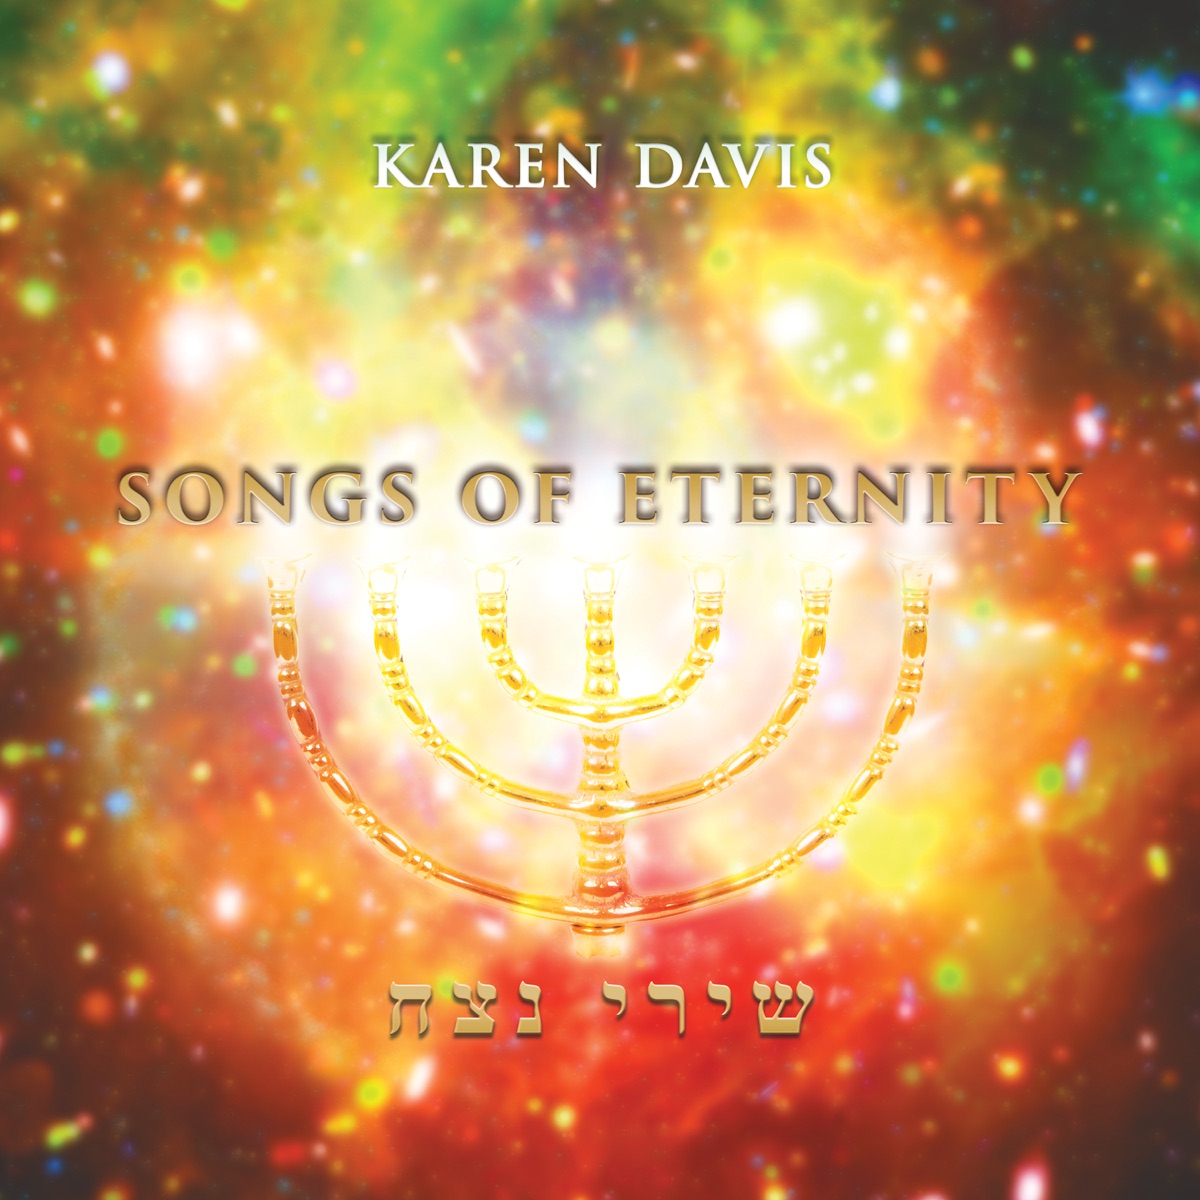 ‎Sar Shalom - Album by Karen Davis - Apple Music